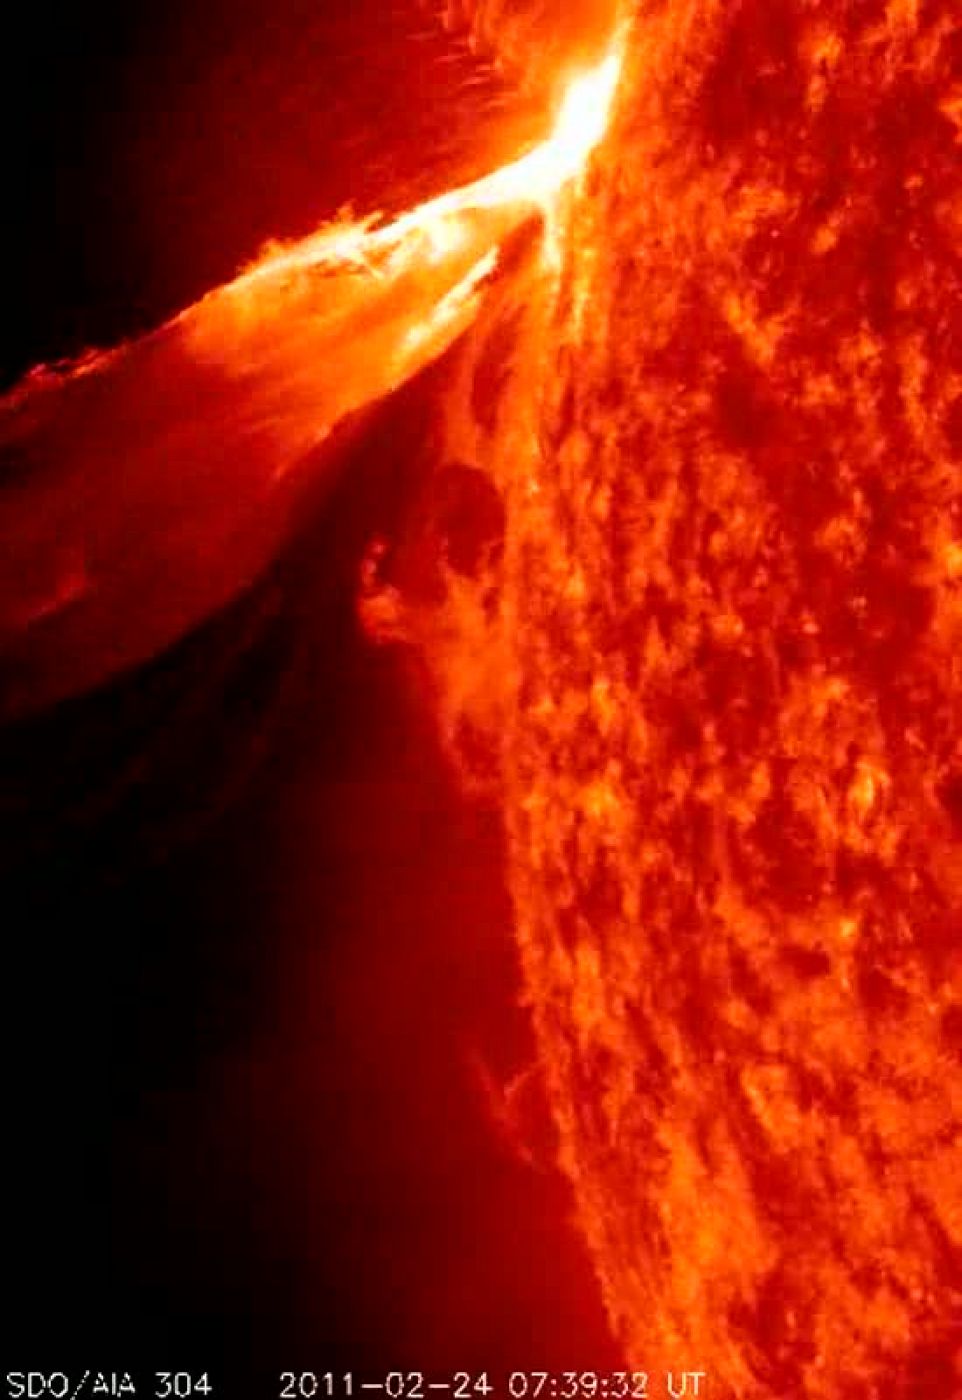 La NASA ha publicado unas impresionantes imágenes de una monstruosa erupción solar. Estas protuberancias solares se producen de forma frecuente y son estudiadas por el Observatorio de la Dinámica Solar (SDO).